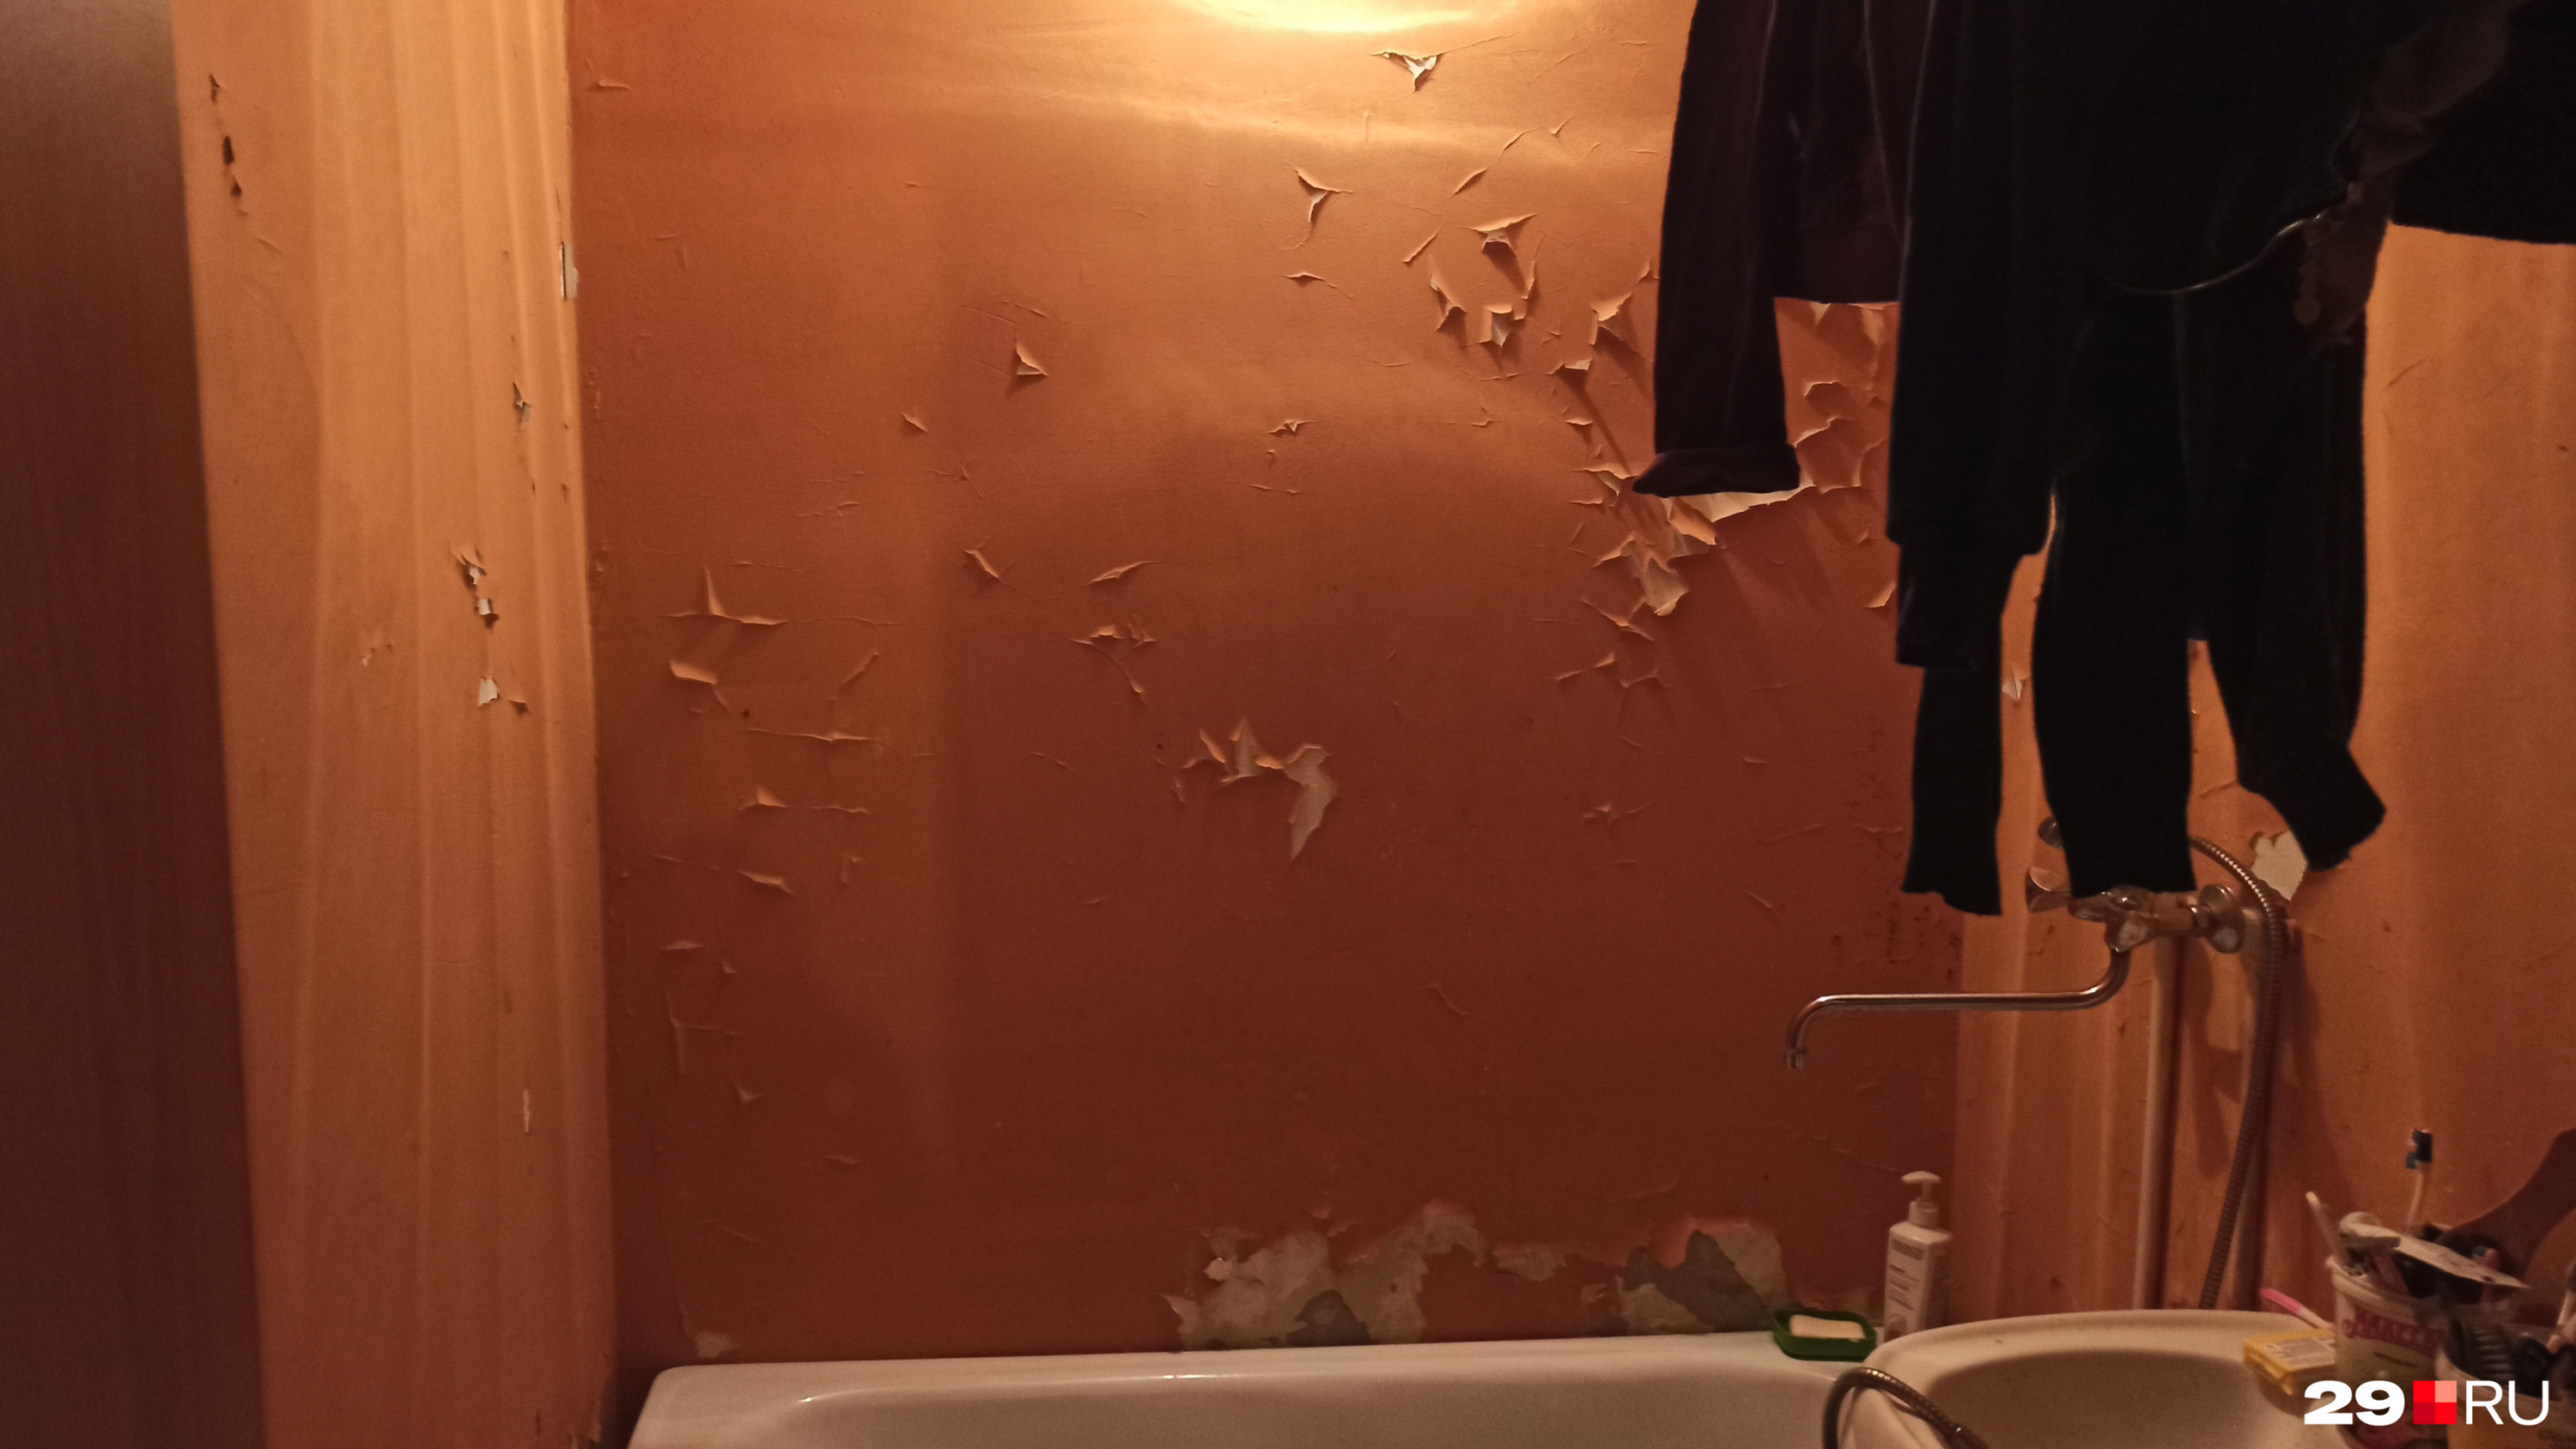 Карташов обязал межведомственную комиссию устранить недостатки в квартире, и ванную комнату недавно покрасили. Но всё снова заросло плесенью, а краска вскоре стала отслаиваться